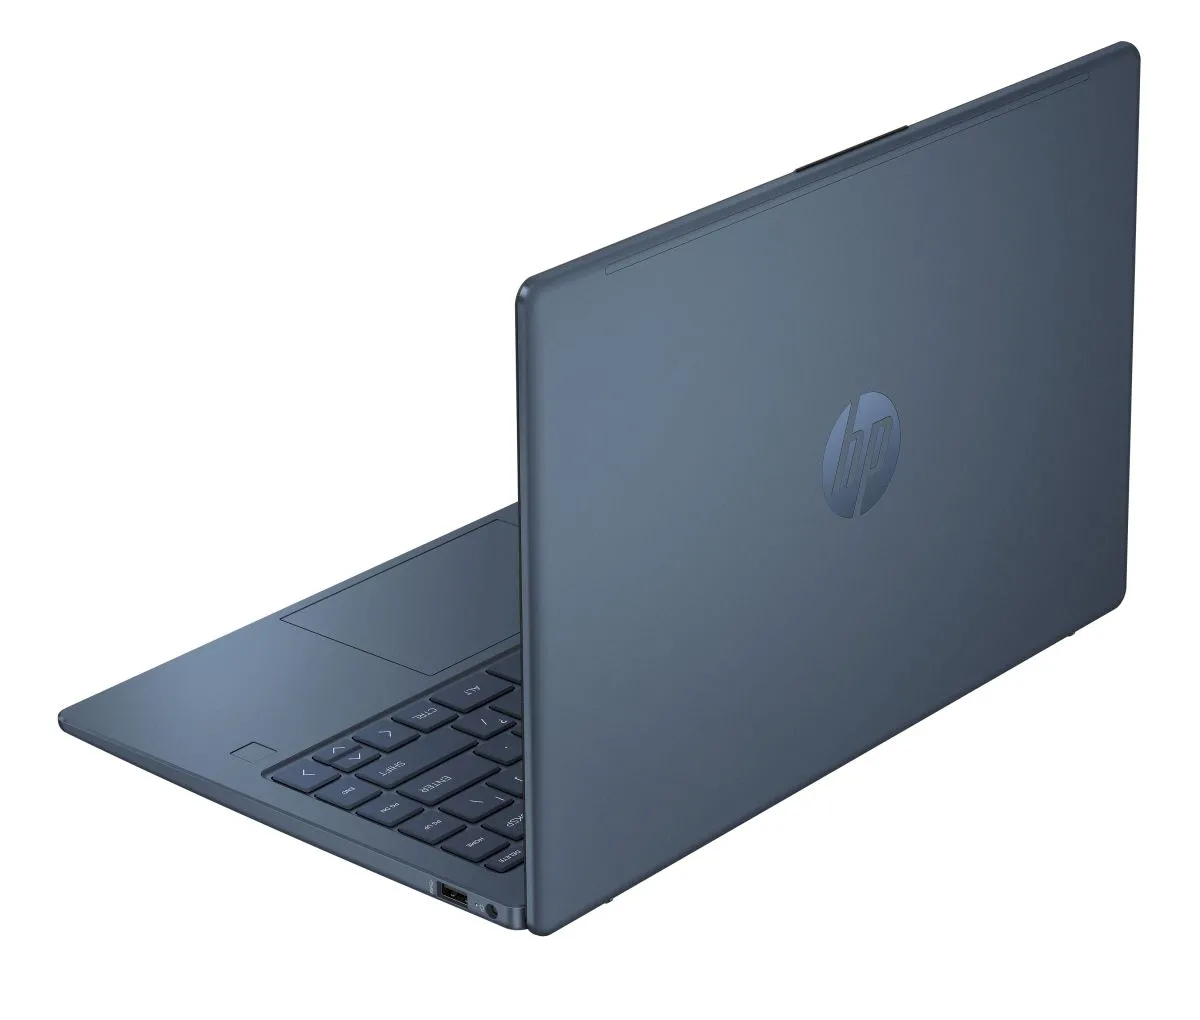 HP Eco Edition, um laptop com chip Raptor Lake e ecológico